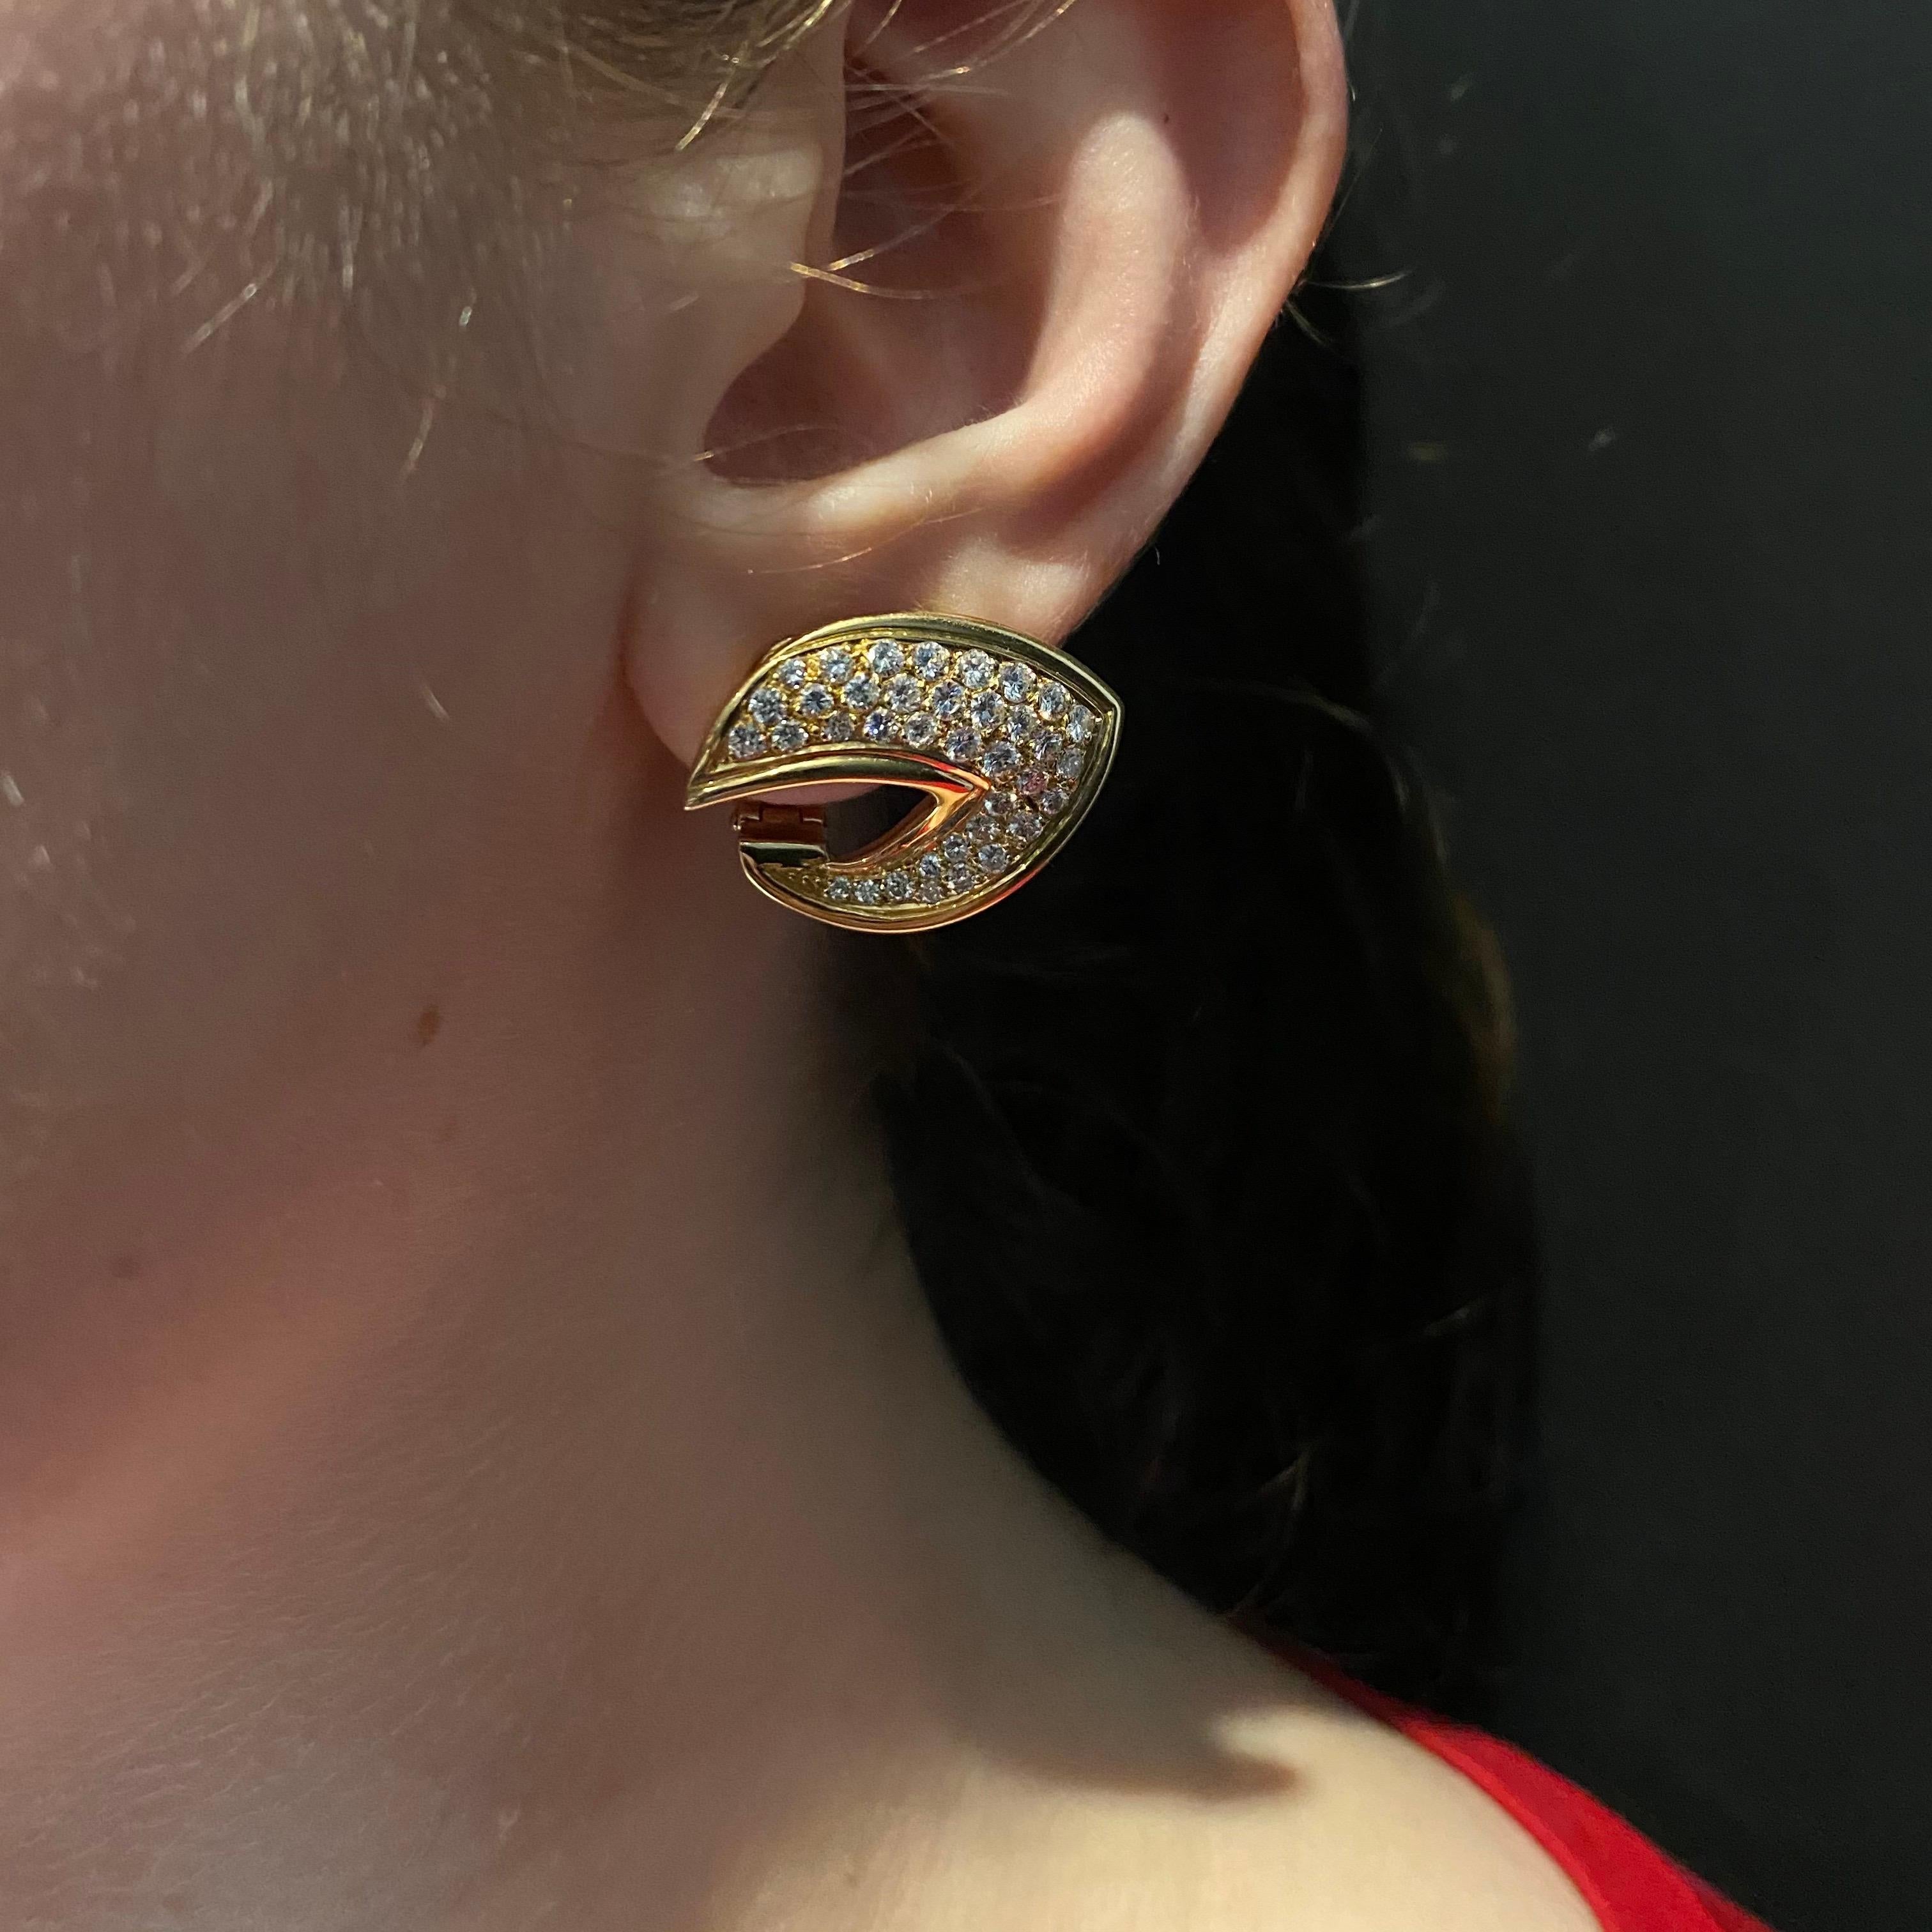 vca earrings gold